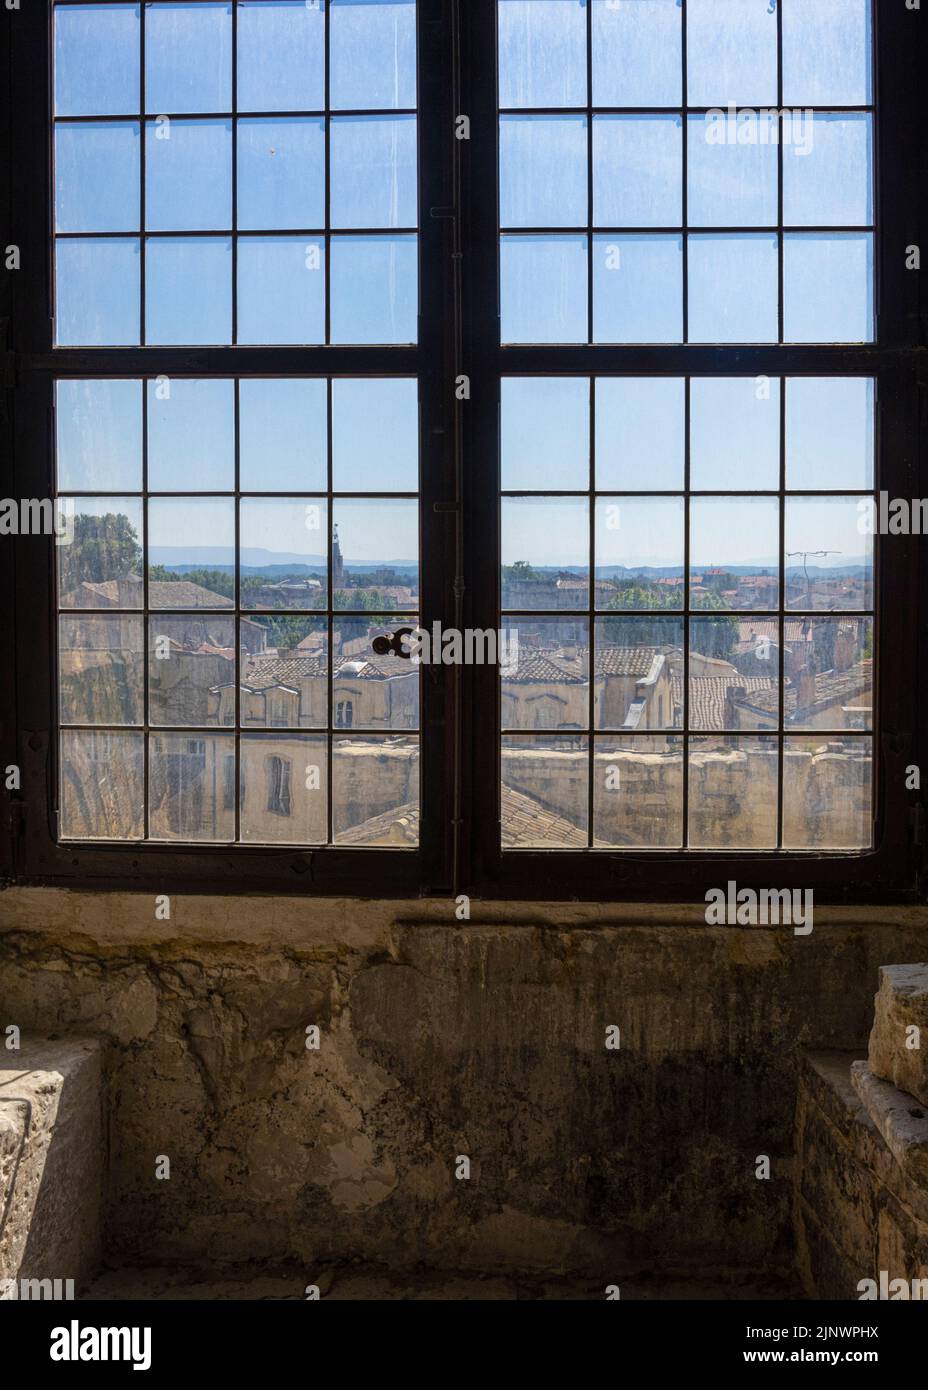 Fenster mit Blick auf Avignon. Papstpalast - Papstpalast, Avignon, Vaucluse, Frankreich. Das historische Zentrum von Avignon ist ein UNESCO W Stockfoto